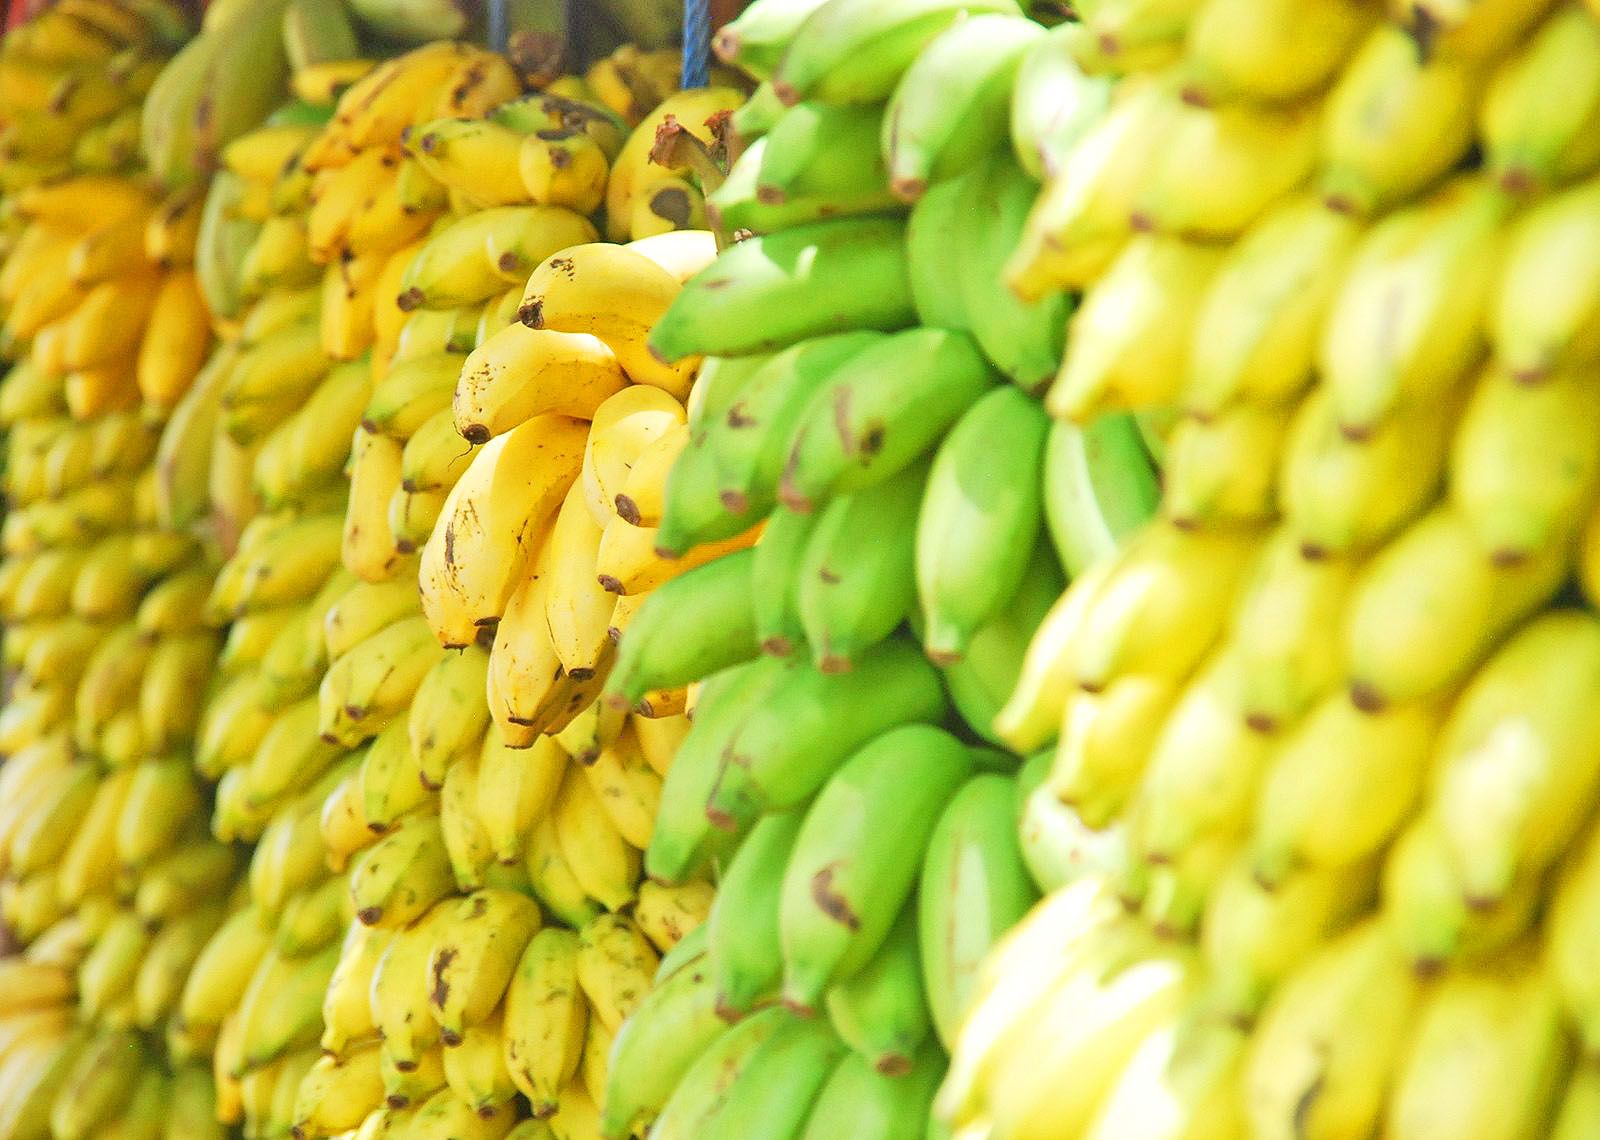 Supply Chain 2.0:Digitizing Bananas